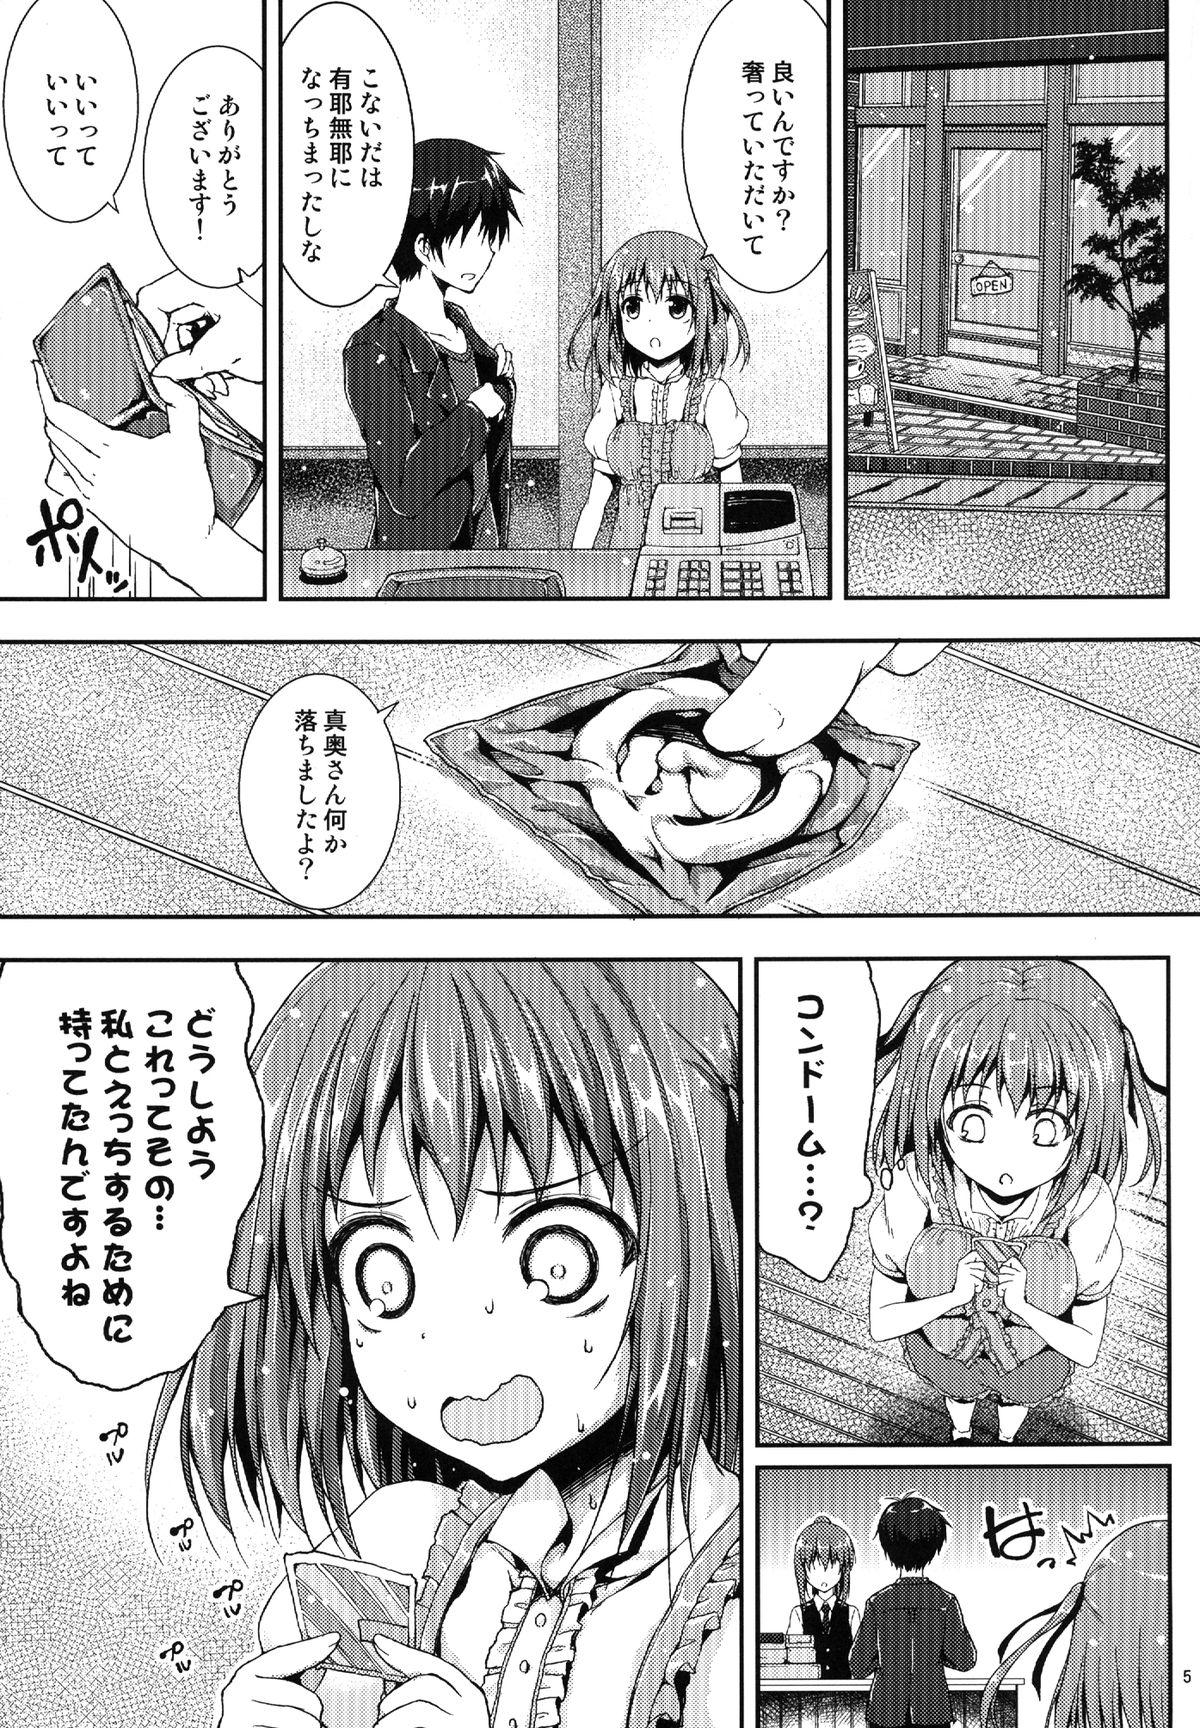 Short Koisuru Chi-chan! - Hataraku maou-sama Top - Page 4